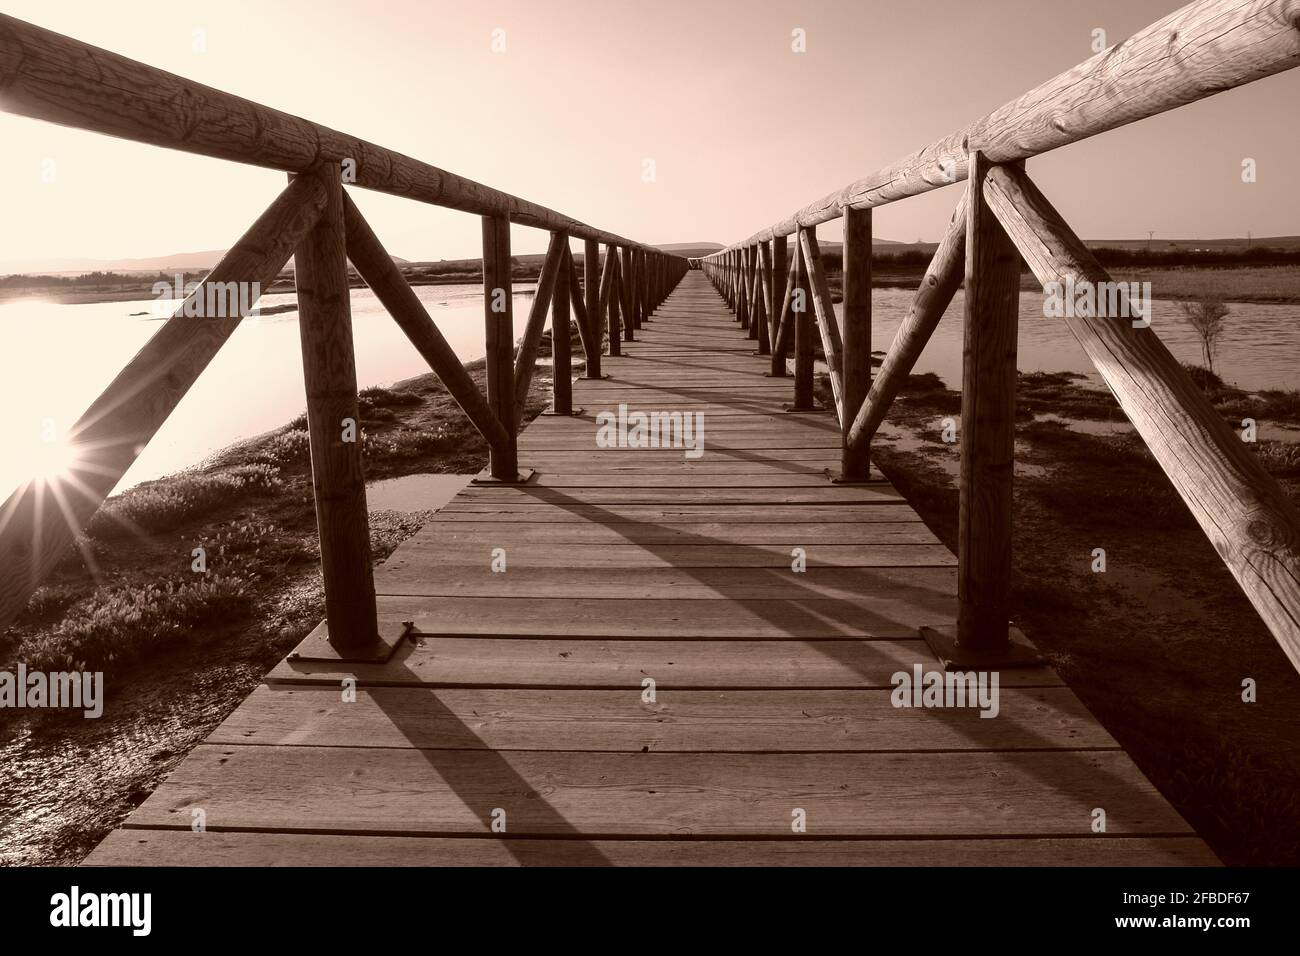 The sun's rays filter through a wooden bridge at the Laguna de Fuente de Piedra in Malaga. Stock Photo